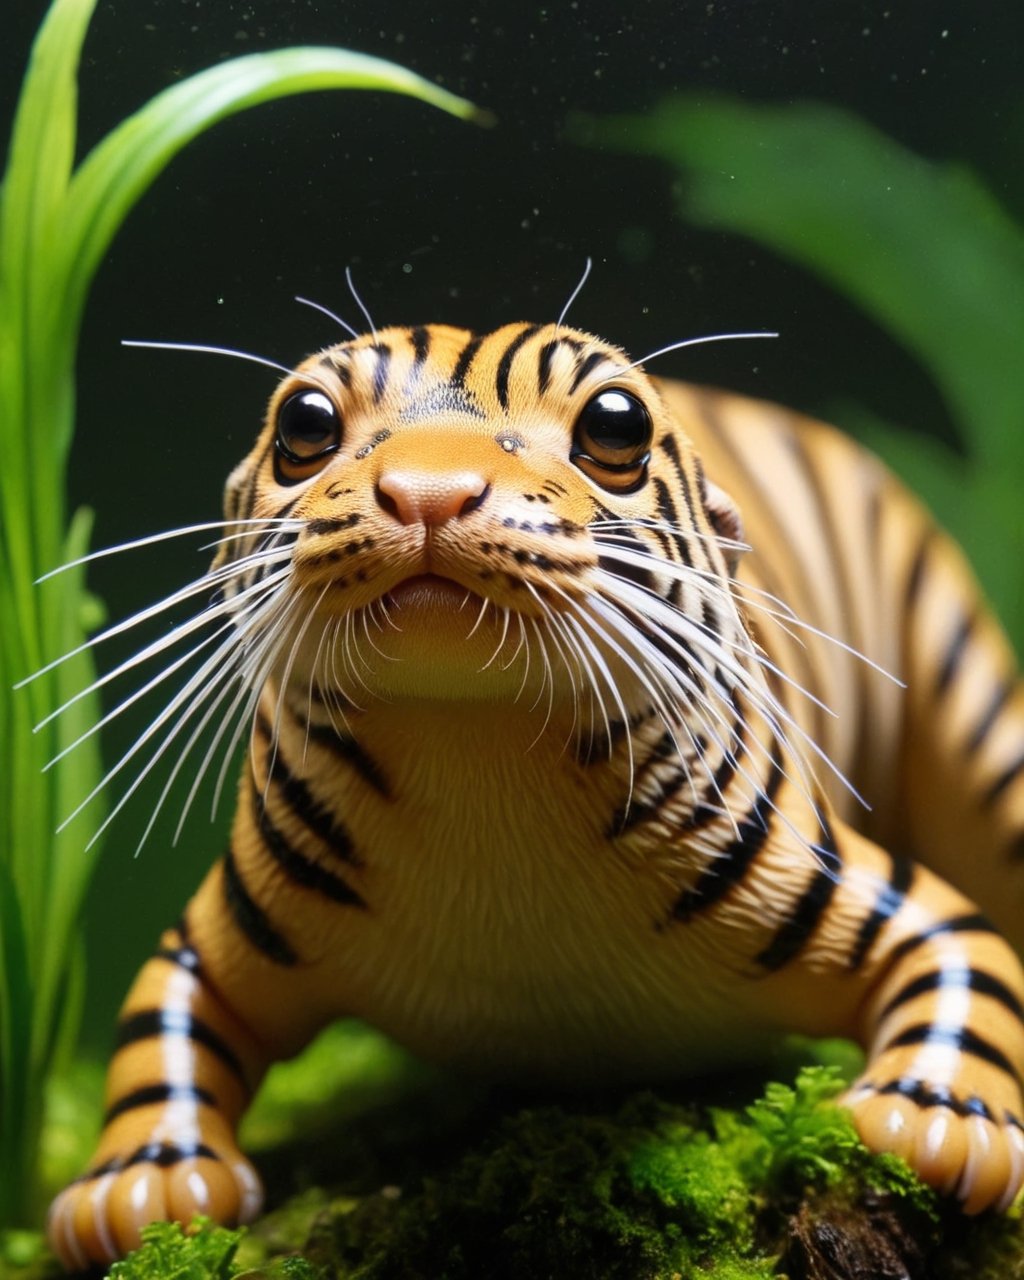 breathtaking Tiger Slug ,  zhibi . award-winning, professional, highly detailed,zhibi